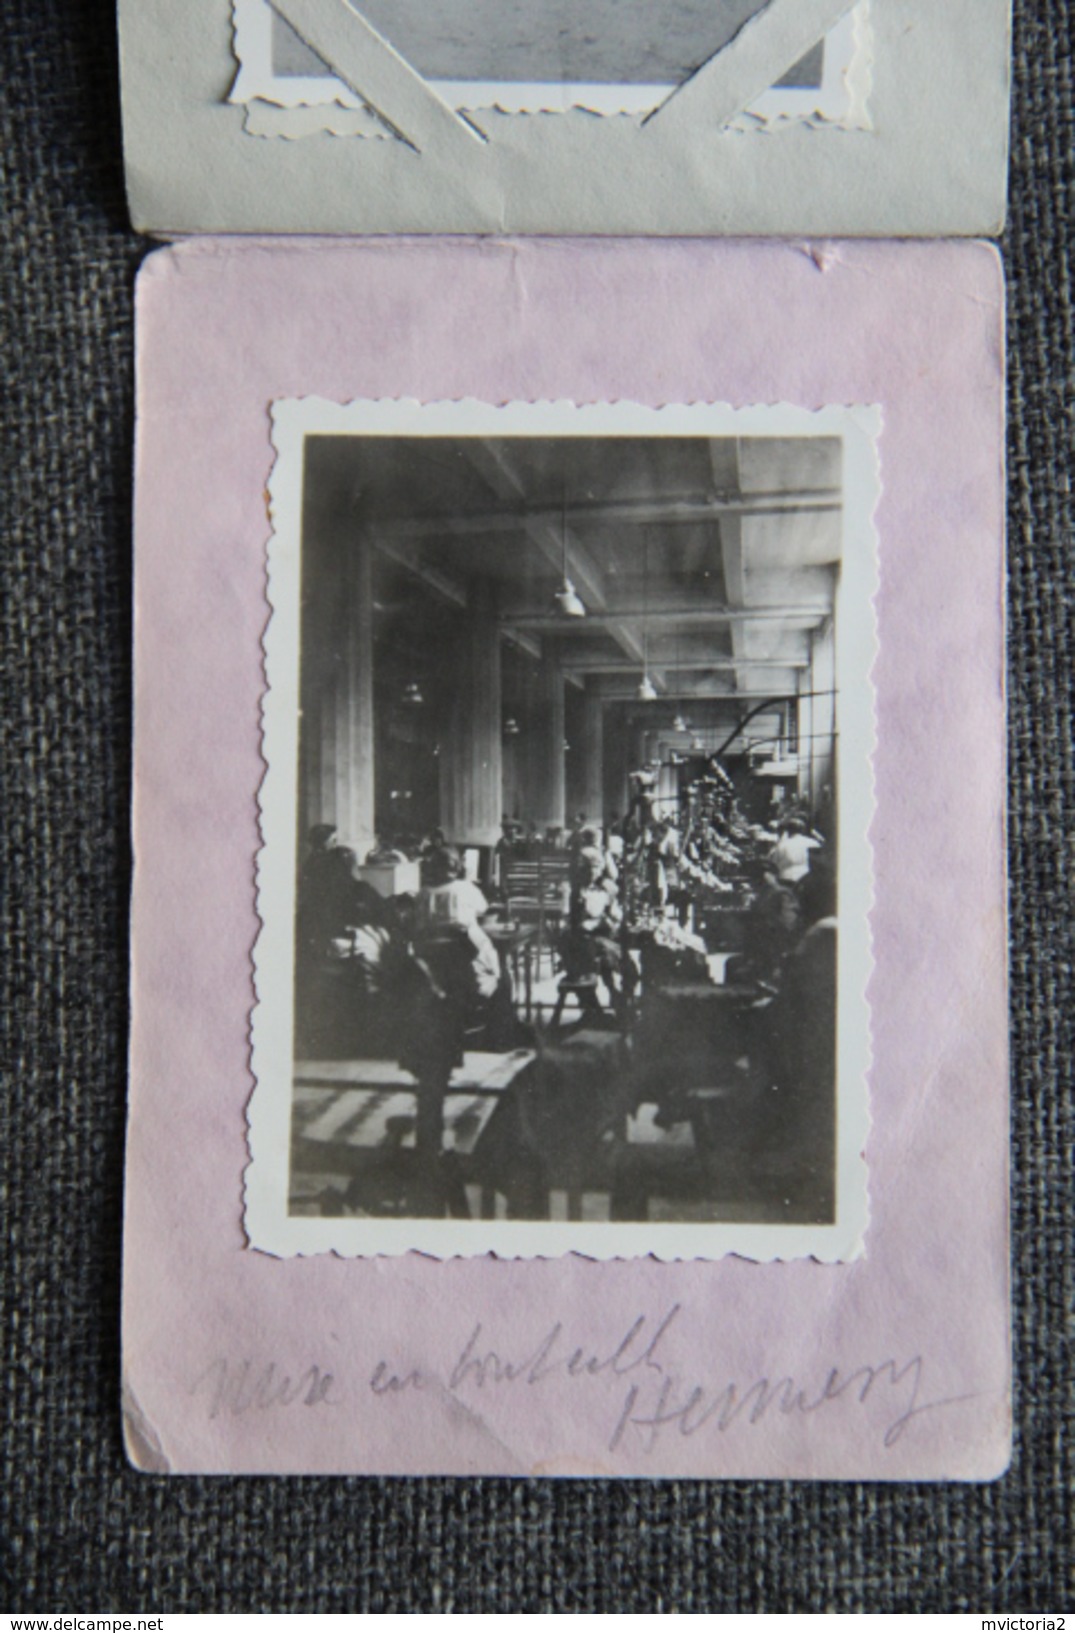 COGNAC, 1933 - Carnet  complet de Photographies du Congrès de l'Association Viticole de FRANCE .